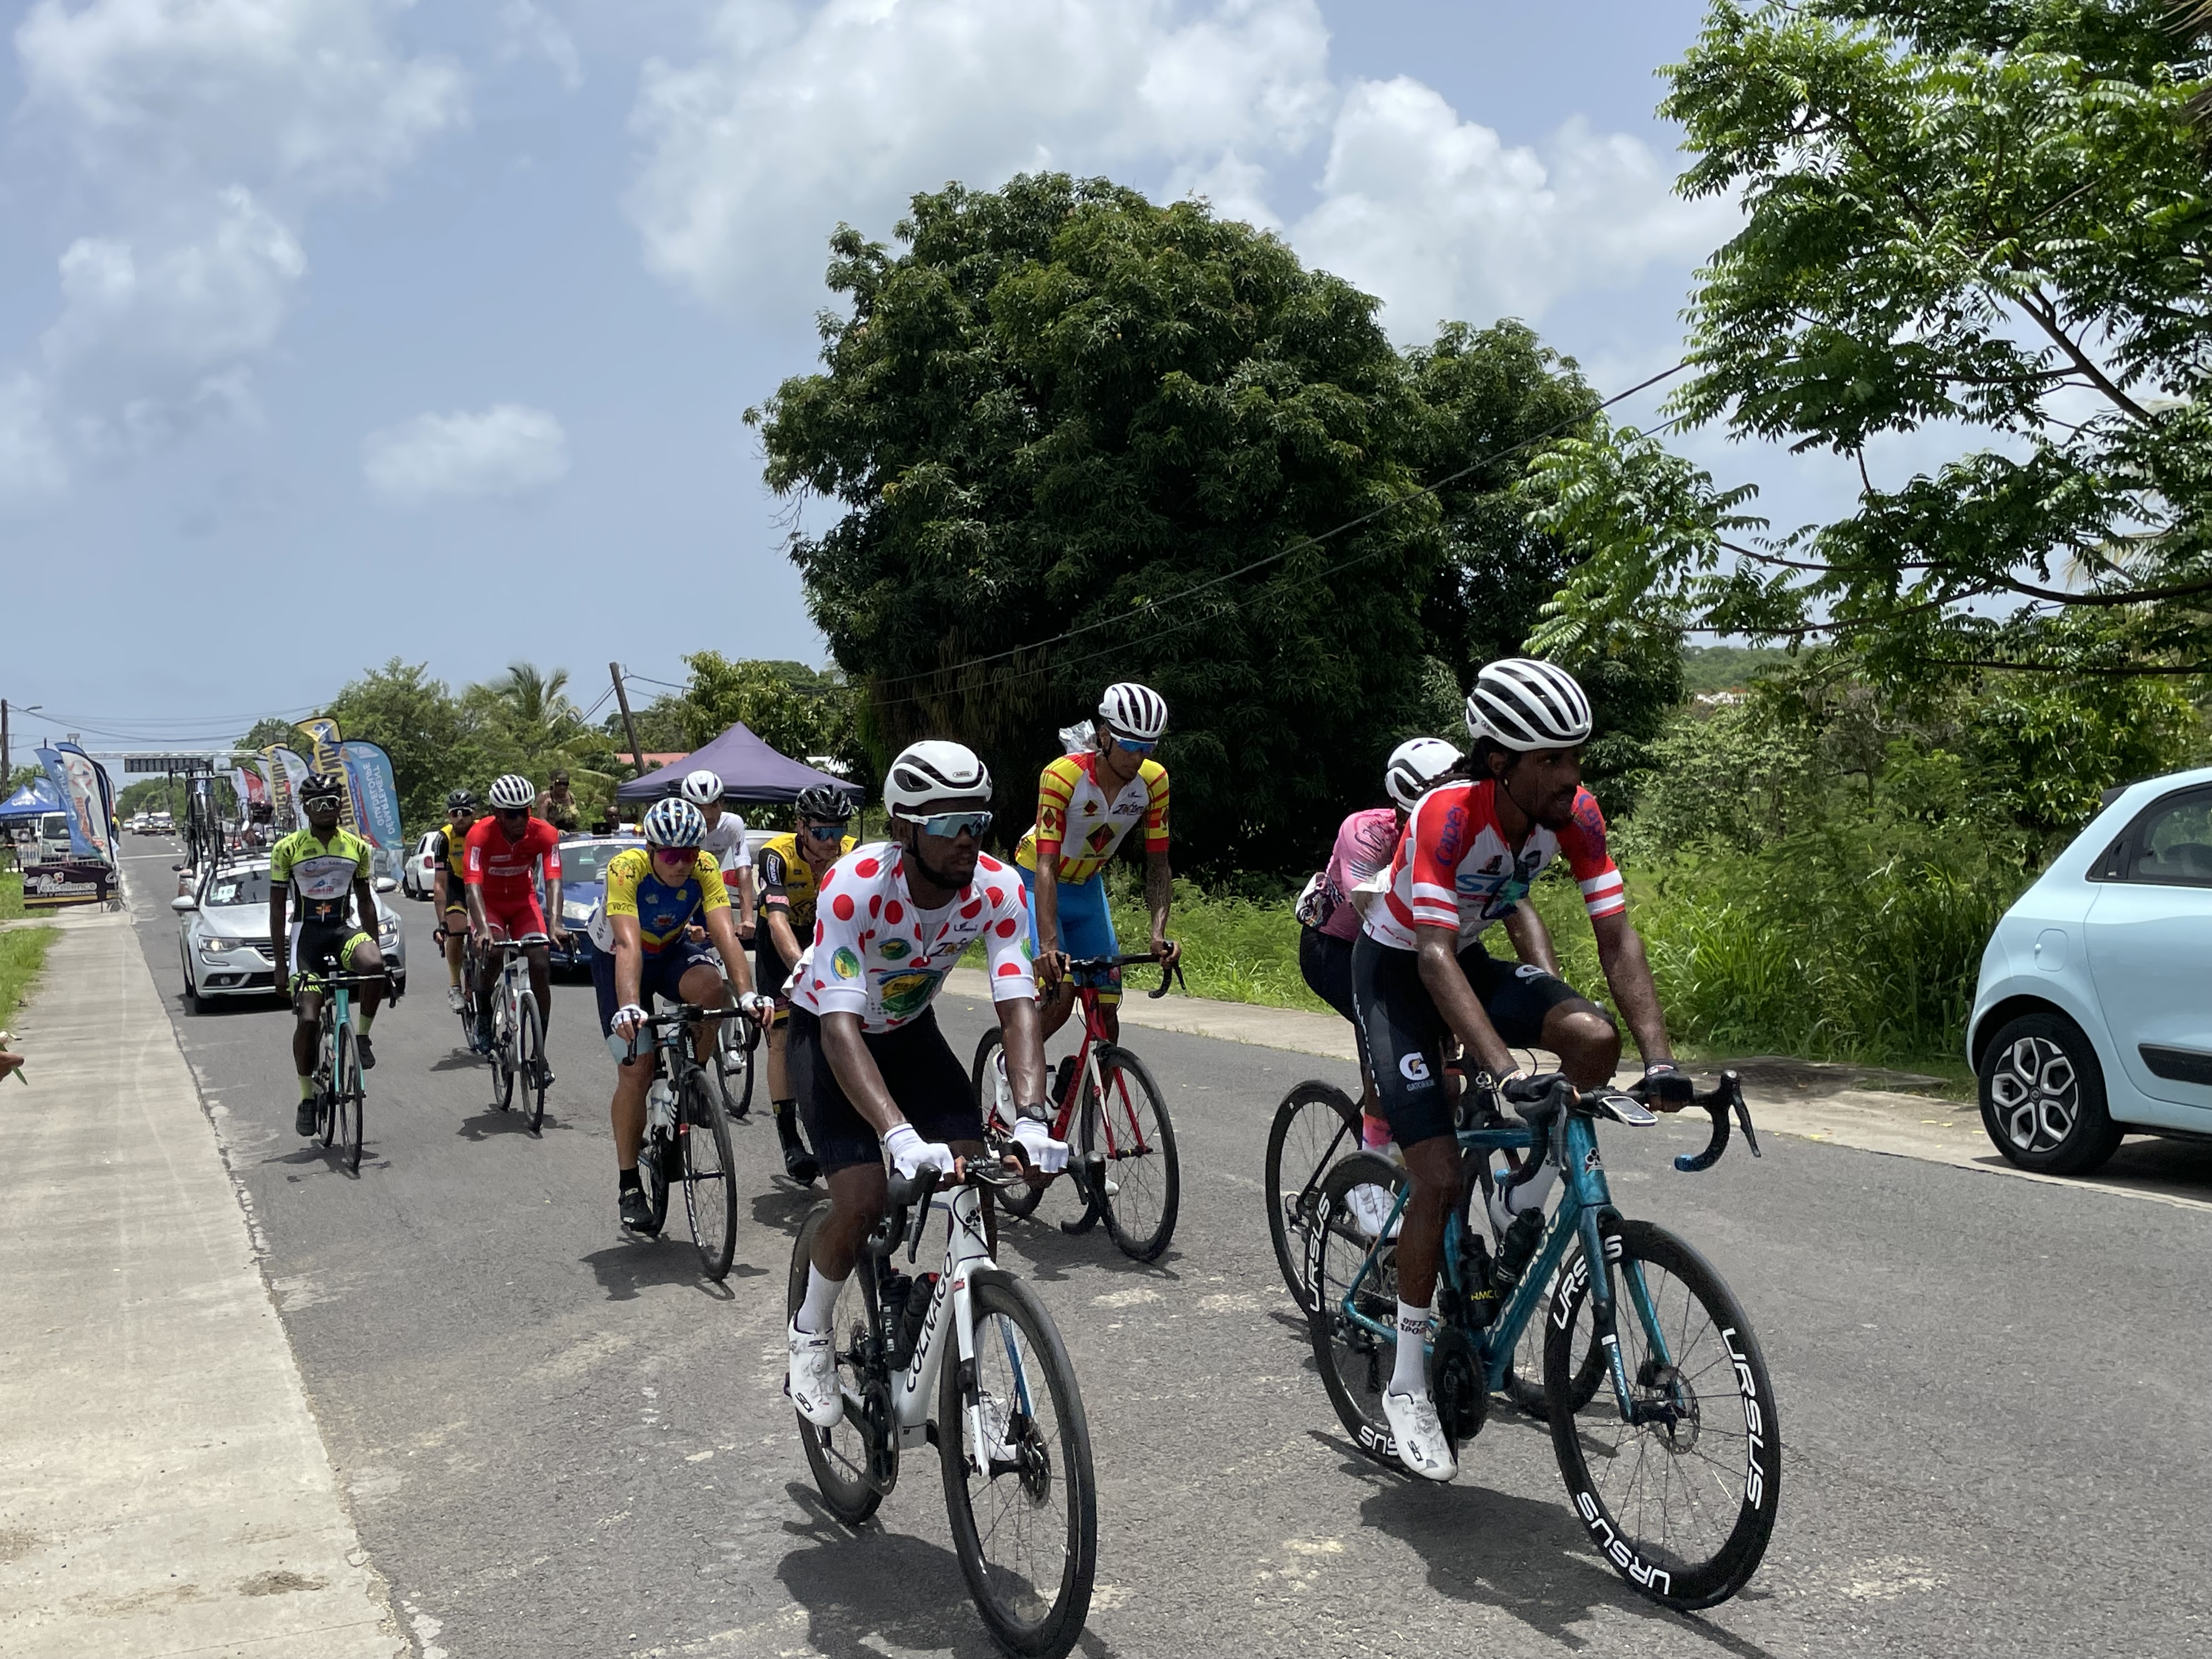     4e étape du Tour cycliste de Marie-Galante : le tour prend une nouvelle tournure

